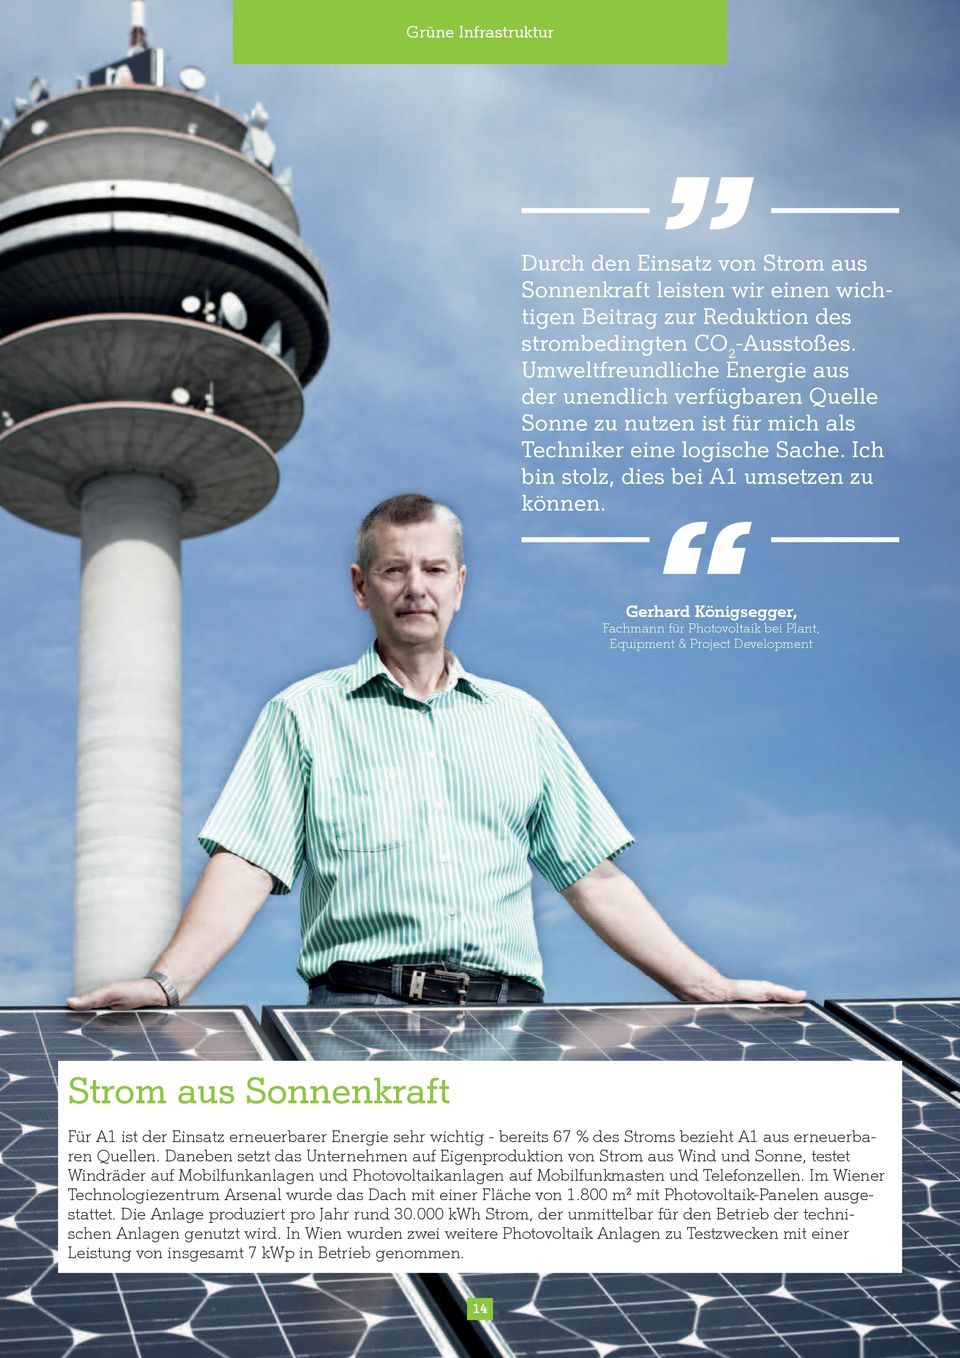 Gerhard Königsegger, Fachmann für Photovoltaik bei Plant, Equipment & Project Development Strom aus Sonnenkraft Für A1 ist der Einsatz erneuerbarer Energie sehr wichtig - bereits 67 % des Stroms